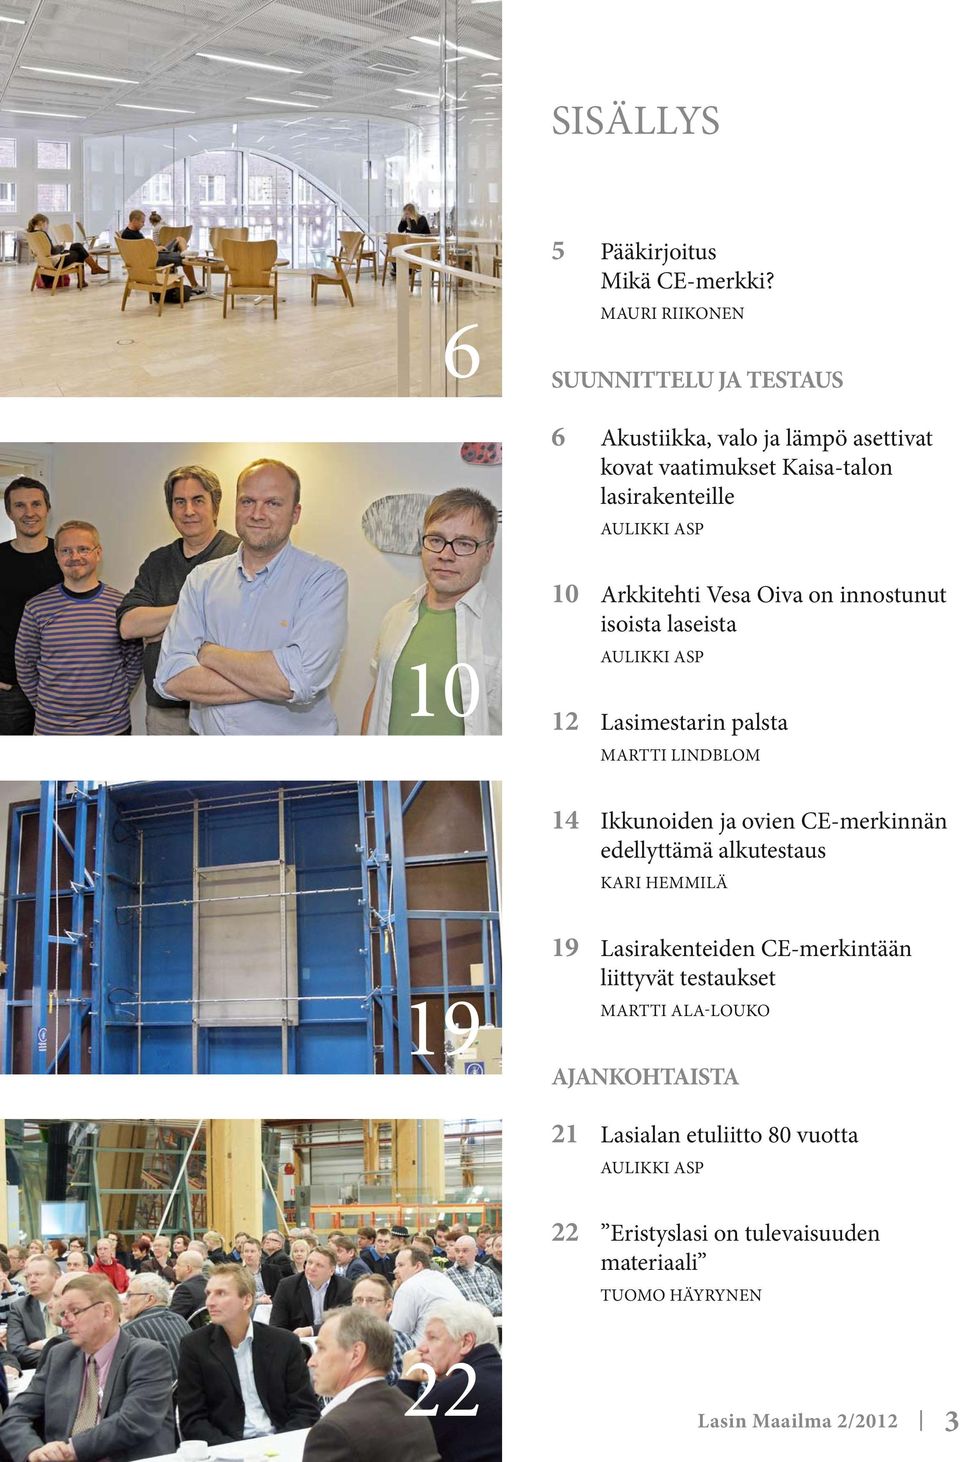 Arkkitehti Vesa Oiva on innostunut isoista laseista Aulikki Asp 12 Lasimestarin palsta Martti Lindblom 14 Ikkunoiden ja ovien CE-merkinnän